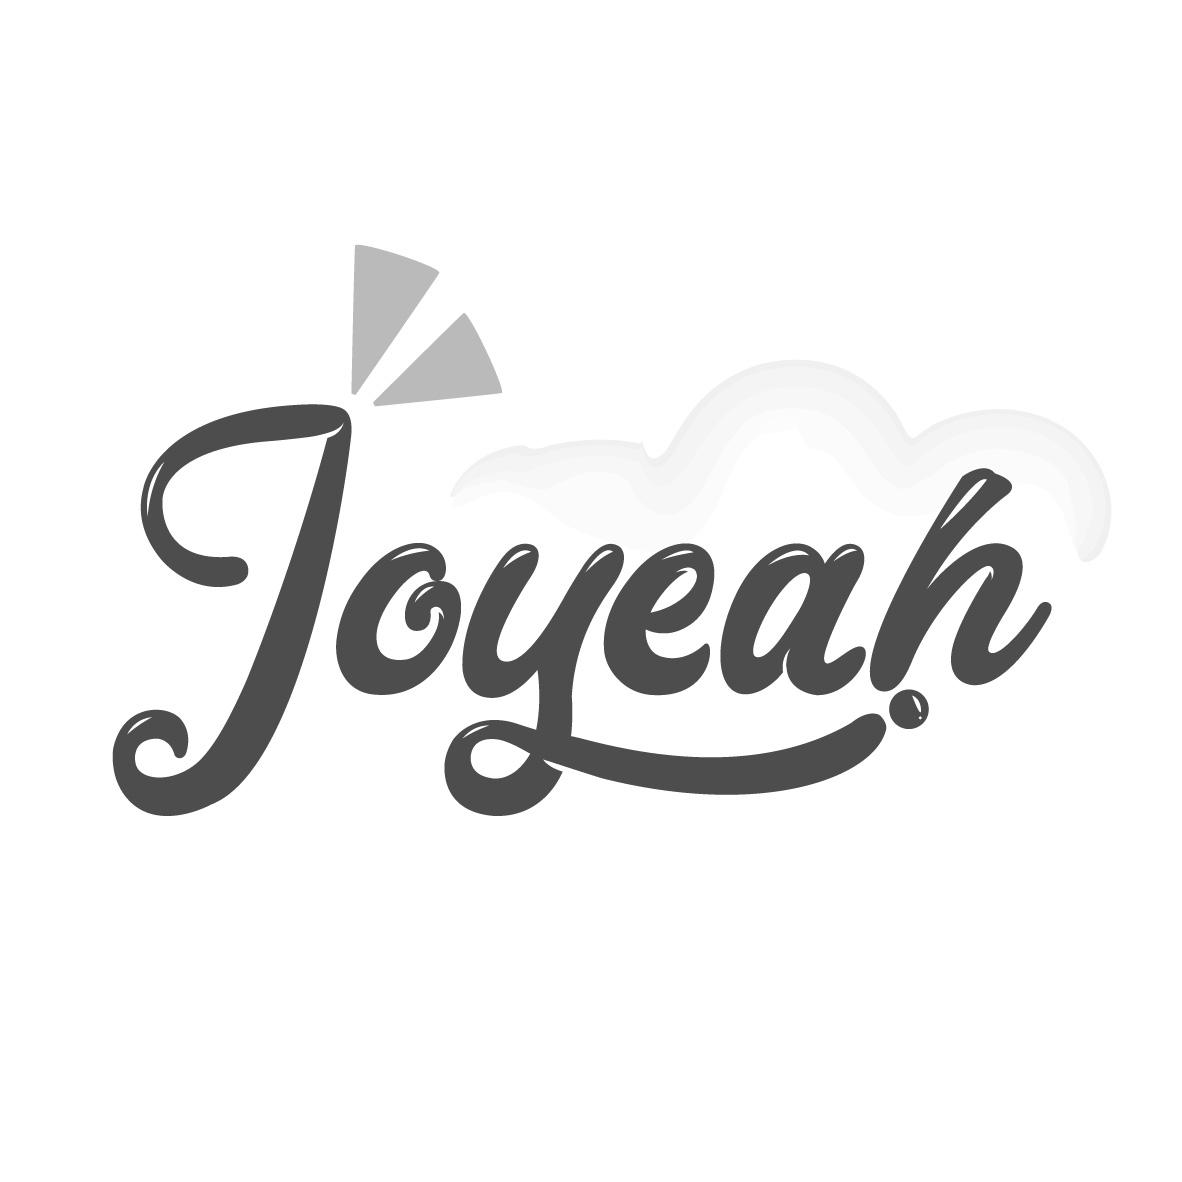 JOYEAH